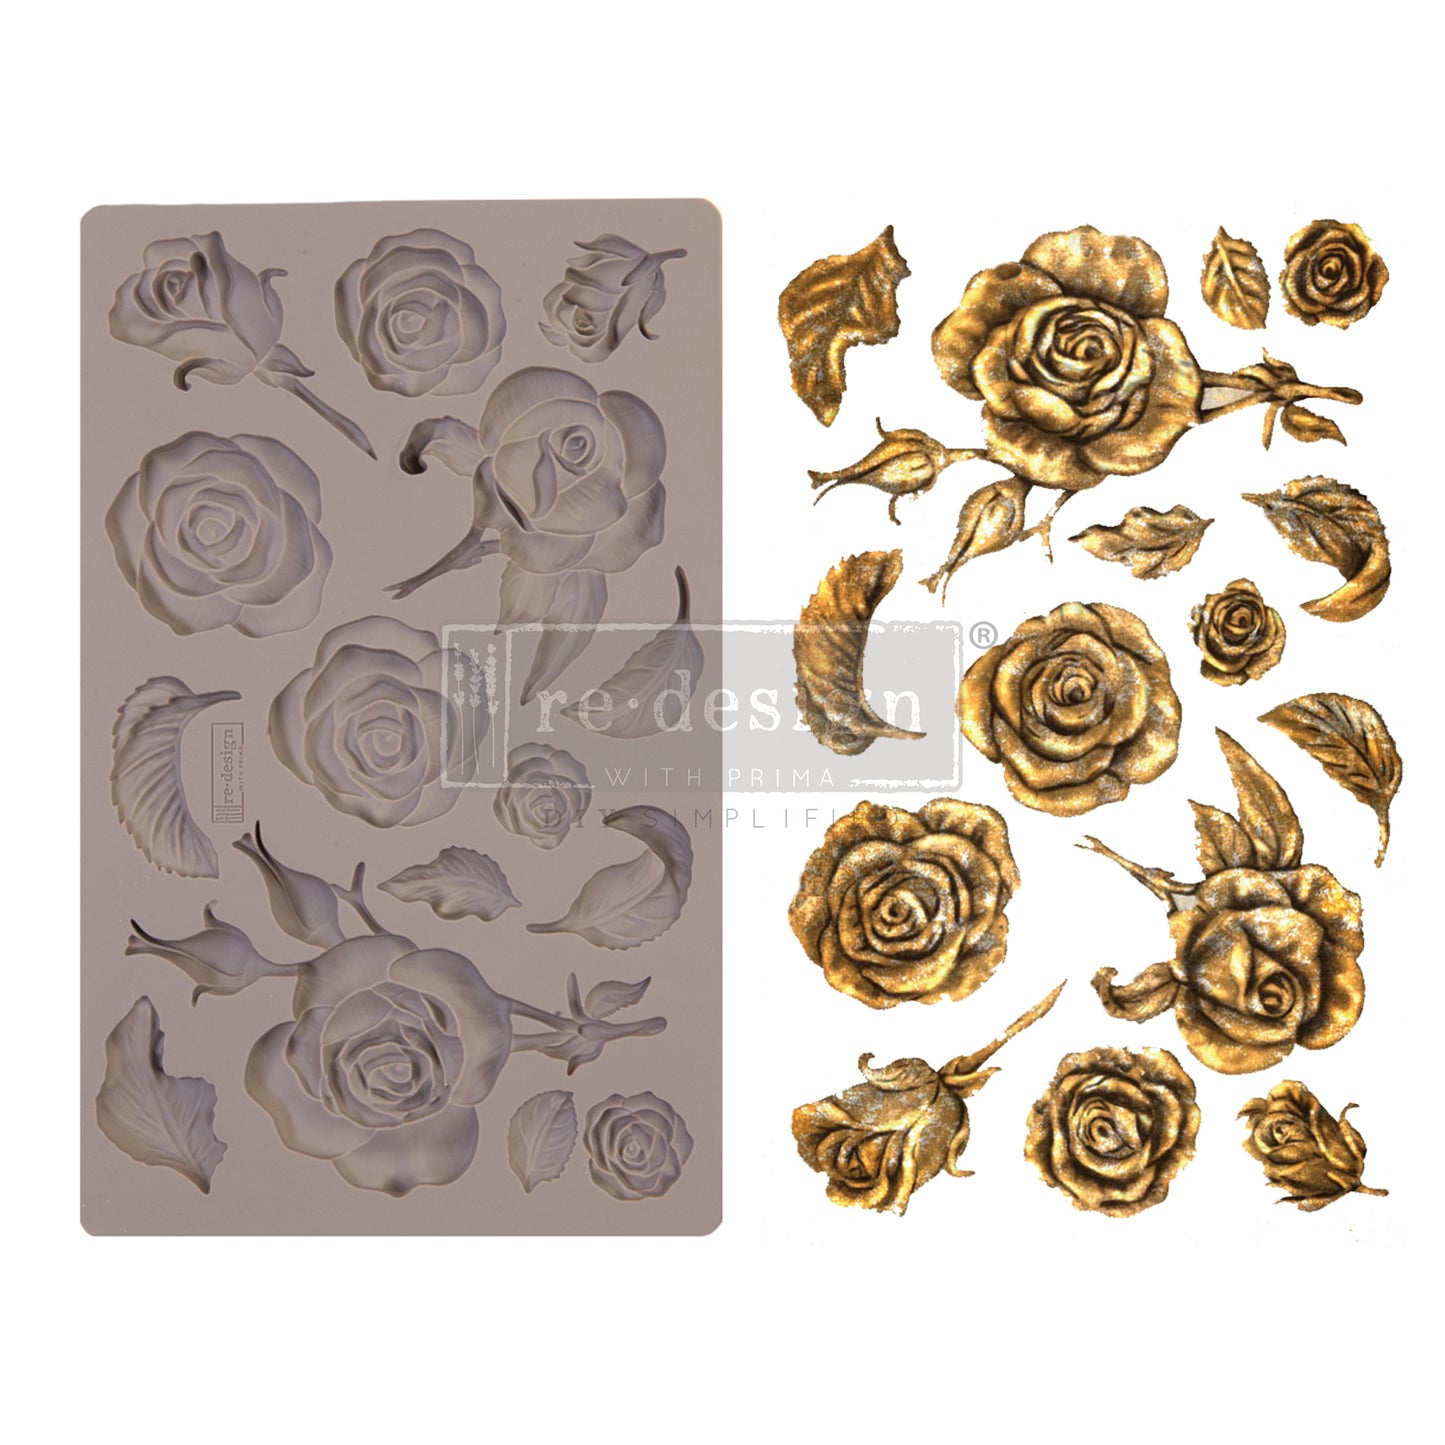 Silikonformen | Redesign - Decor Mould - Fragrant Roses